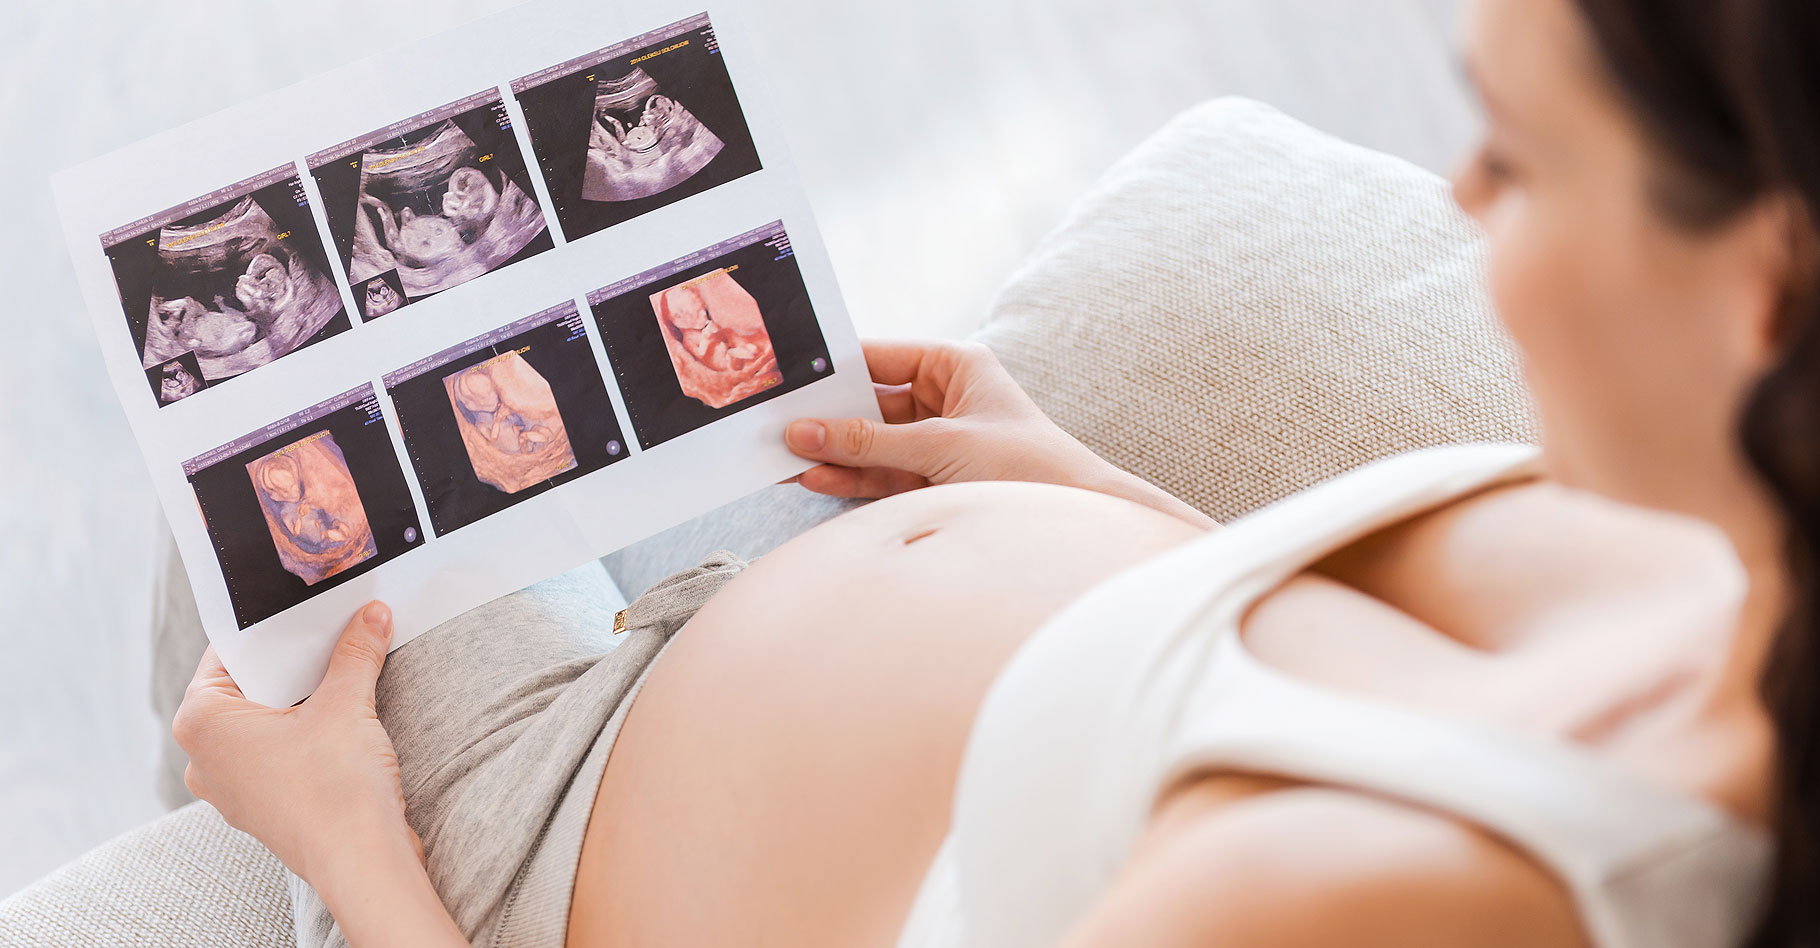 Enceinte de 4 mois : le fœtus à 4 mois de grossesse